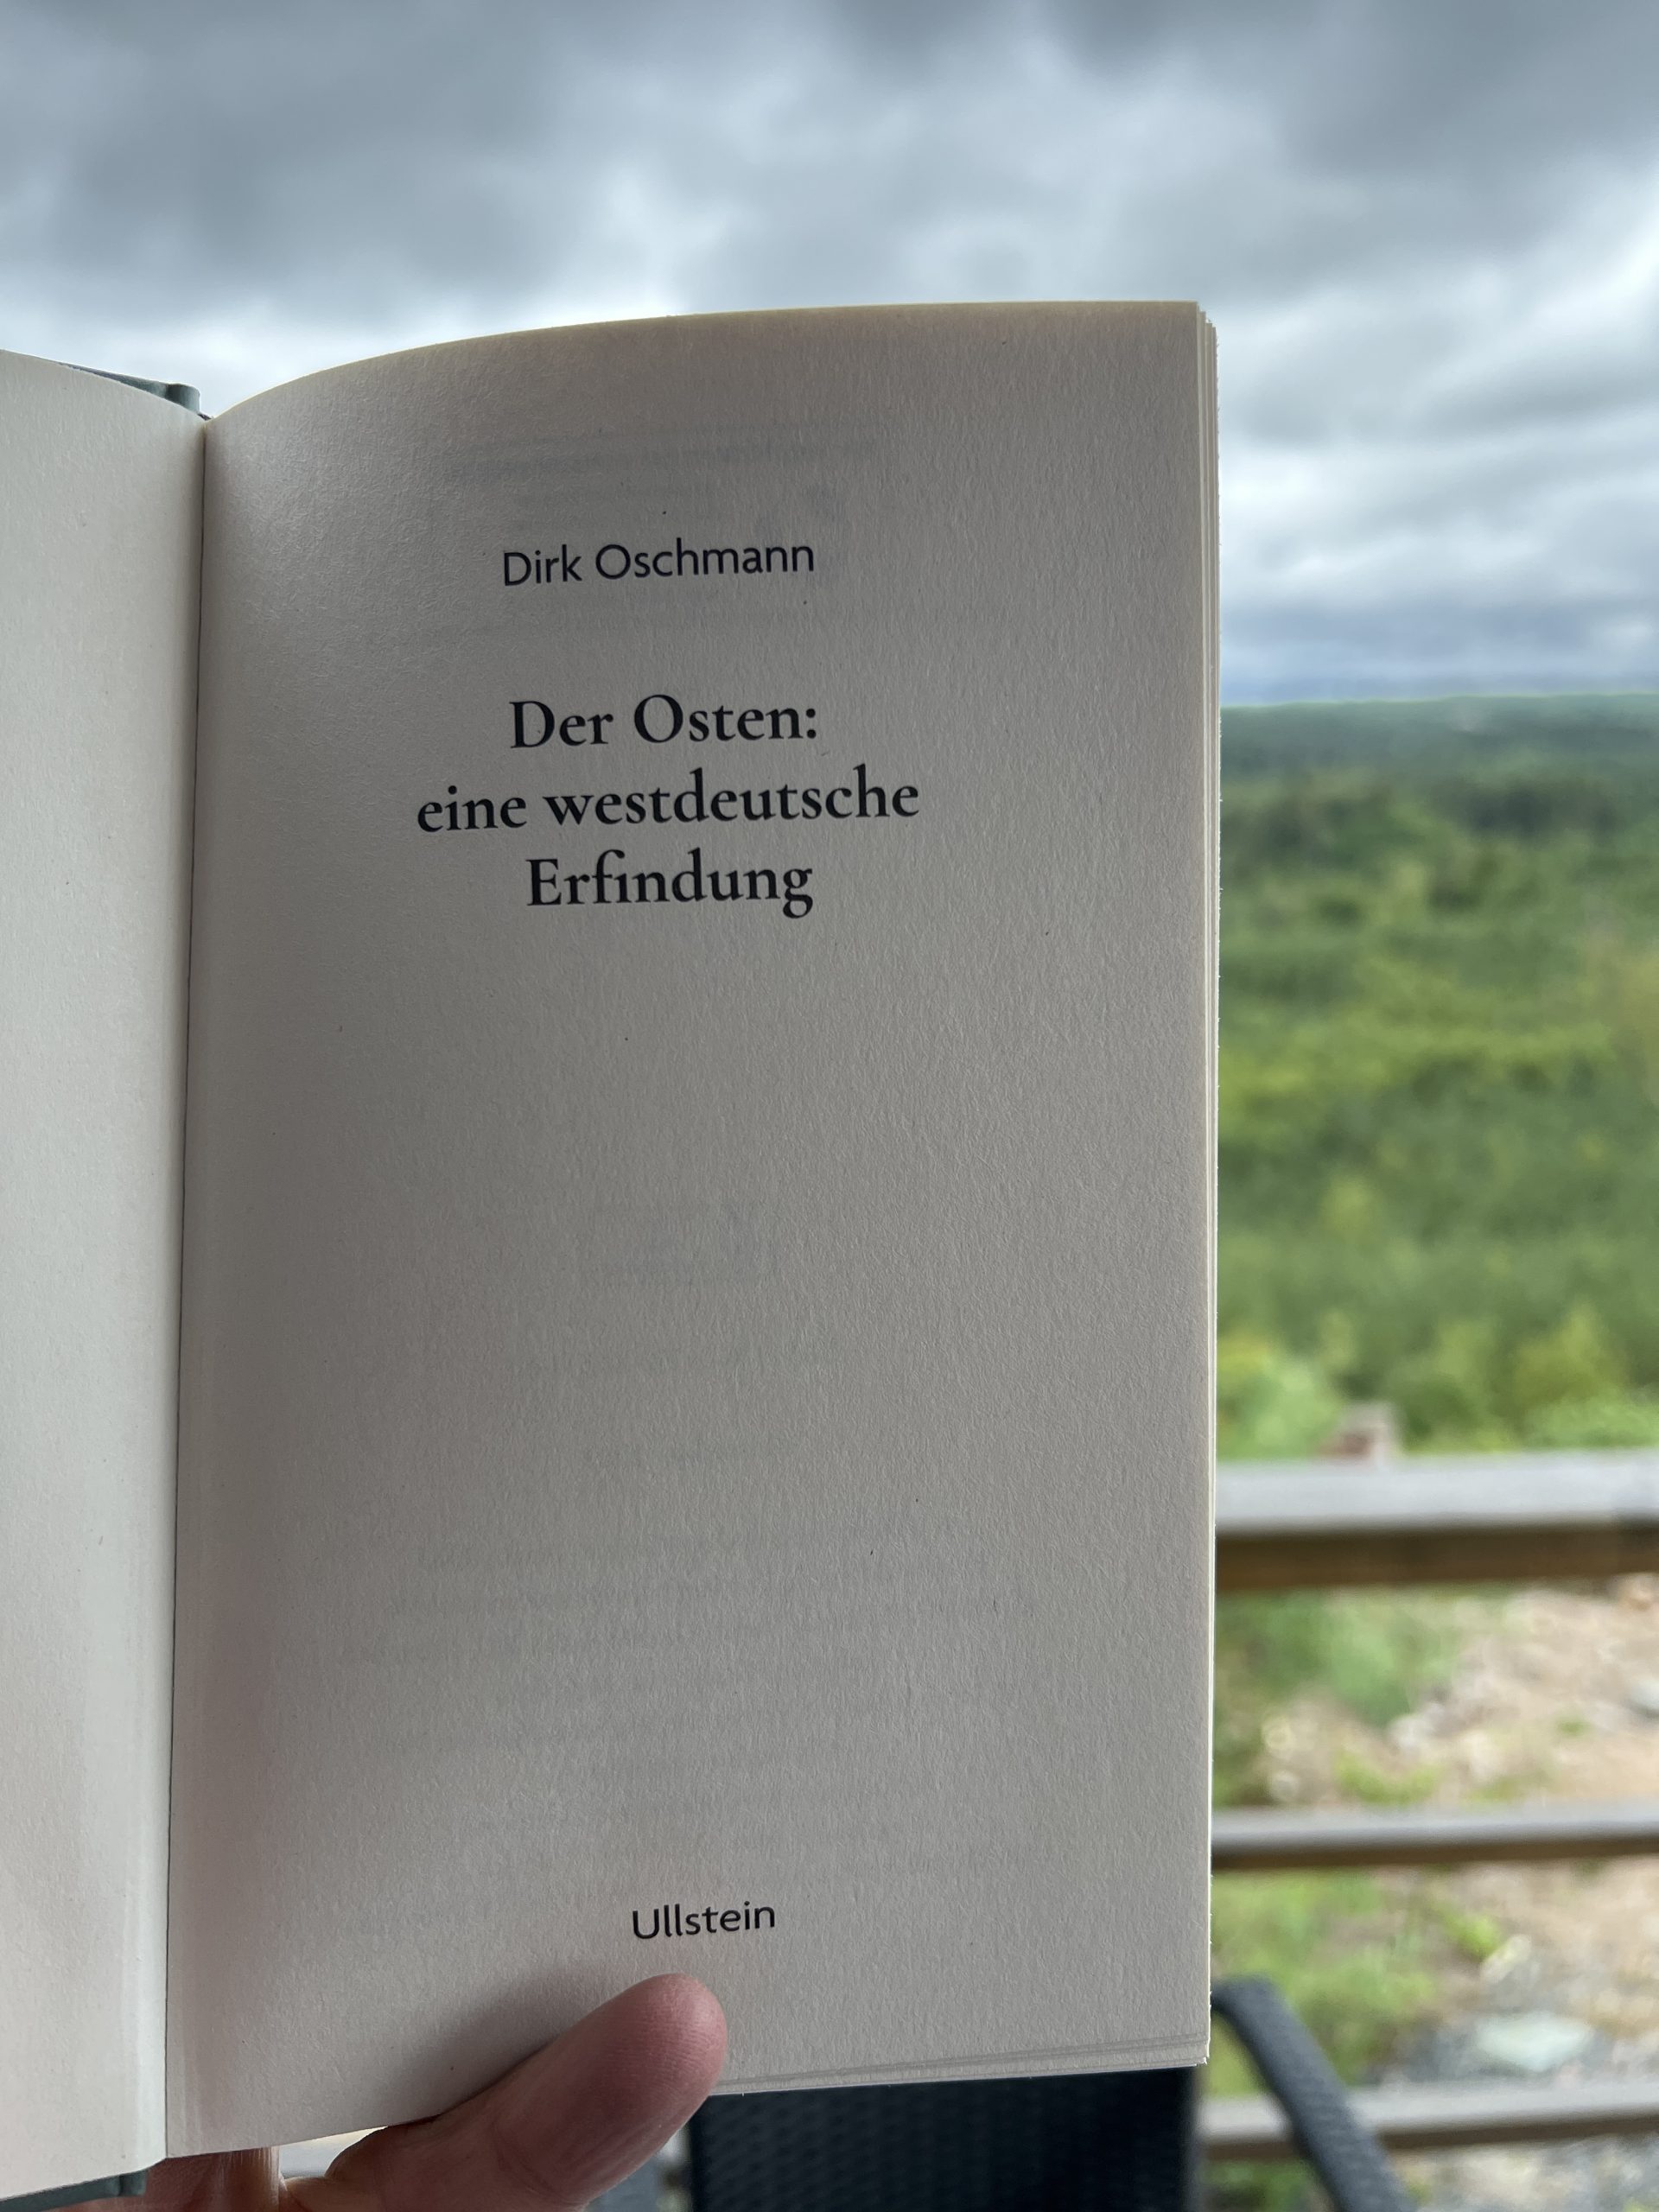 Ferienlektüre 1: Dirk Oschmann. Der Osten: eine westdeutsche Erfindung